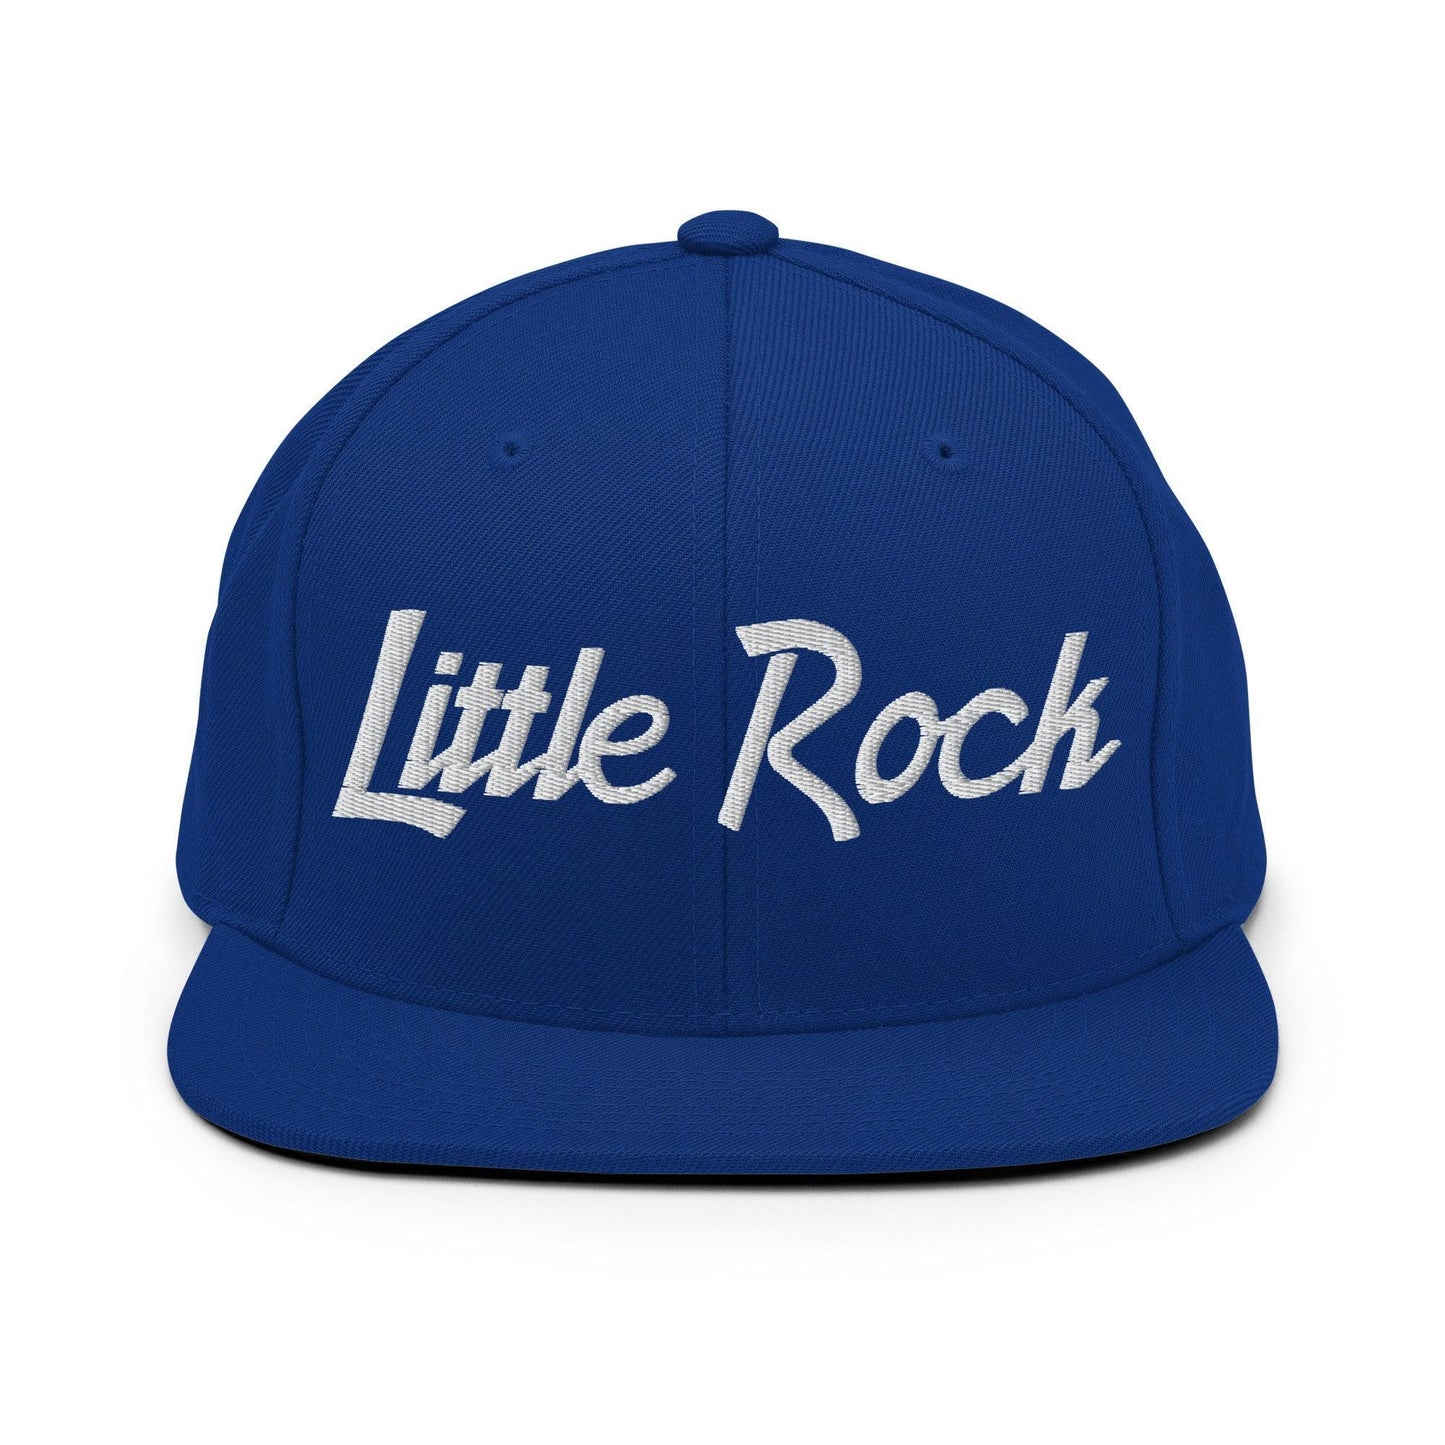 Little Rock Script Snapback Hat Royal Blue